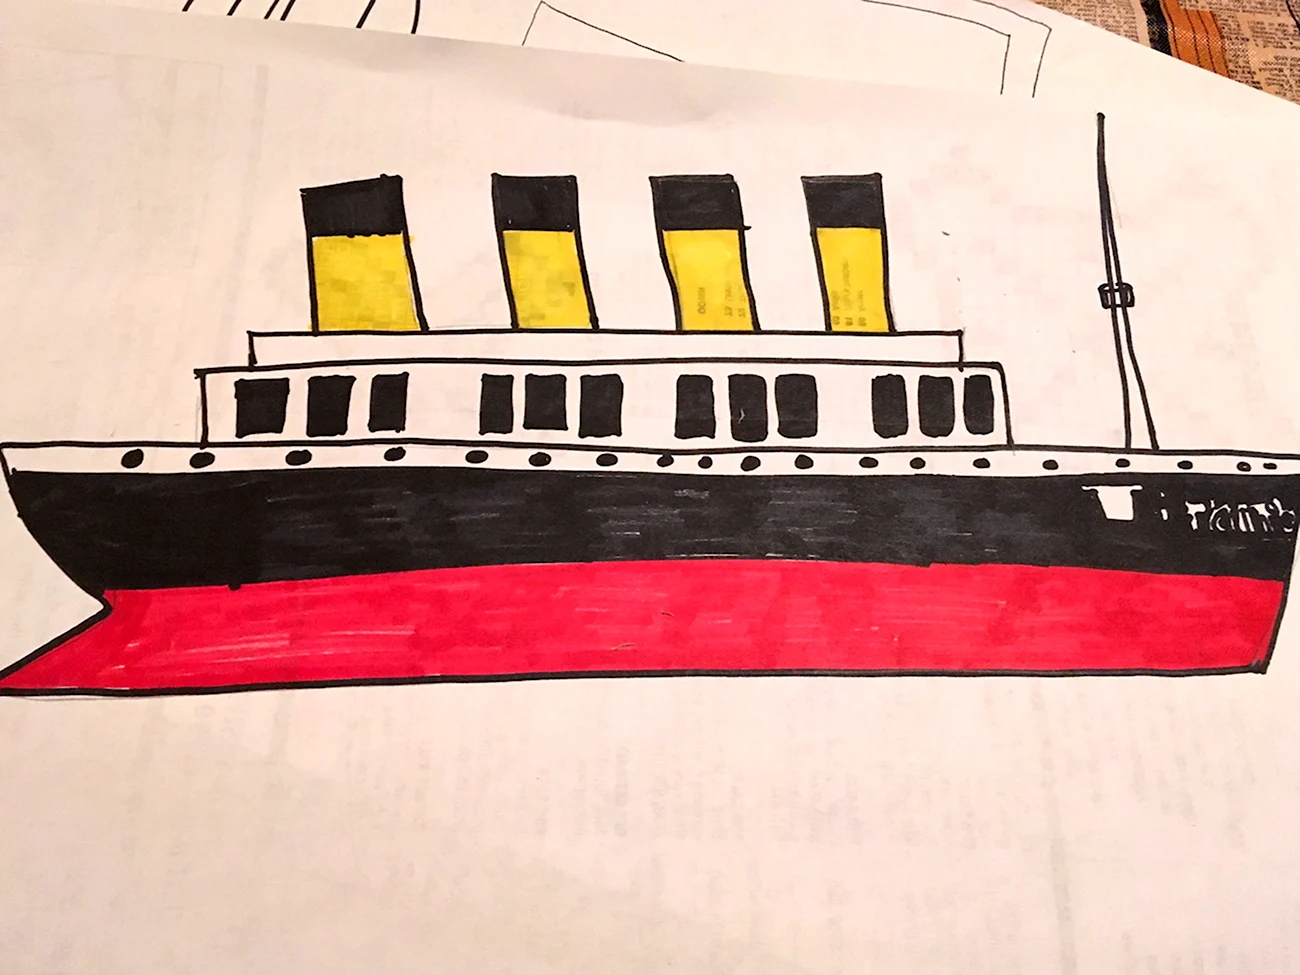 Титаник рисование. Для срисовки